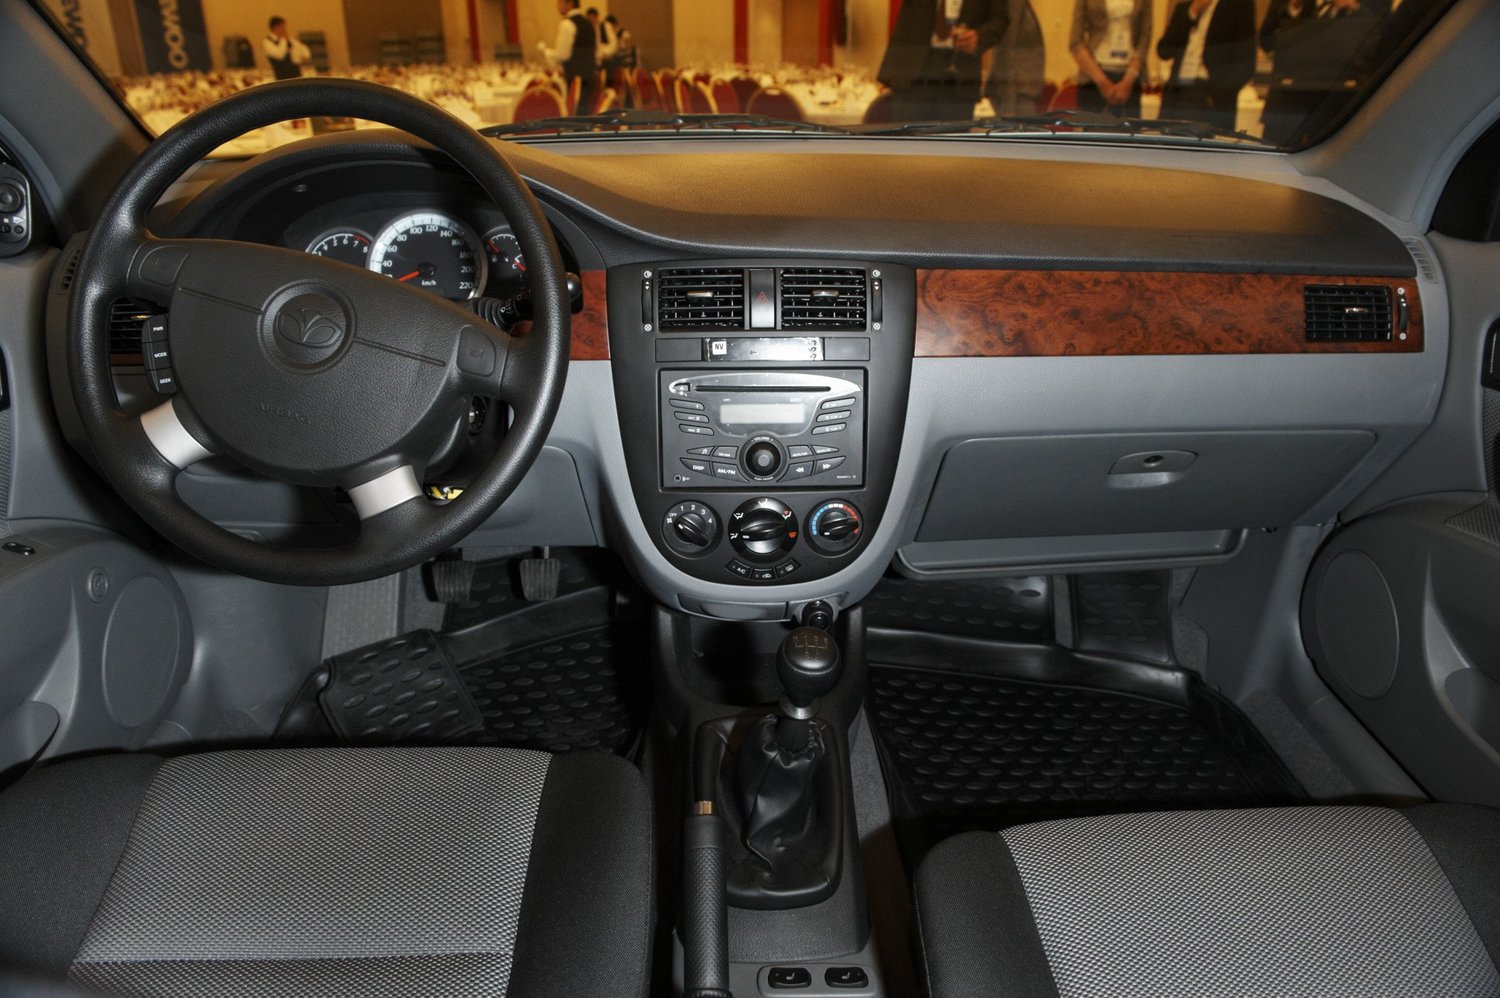 седан Daewoo Gentra 2013 - 2015г выпуска модификация Comfort 1.5 MT (107 л.с.)